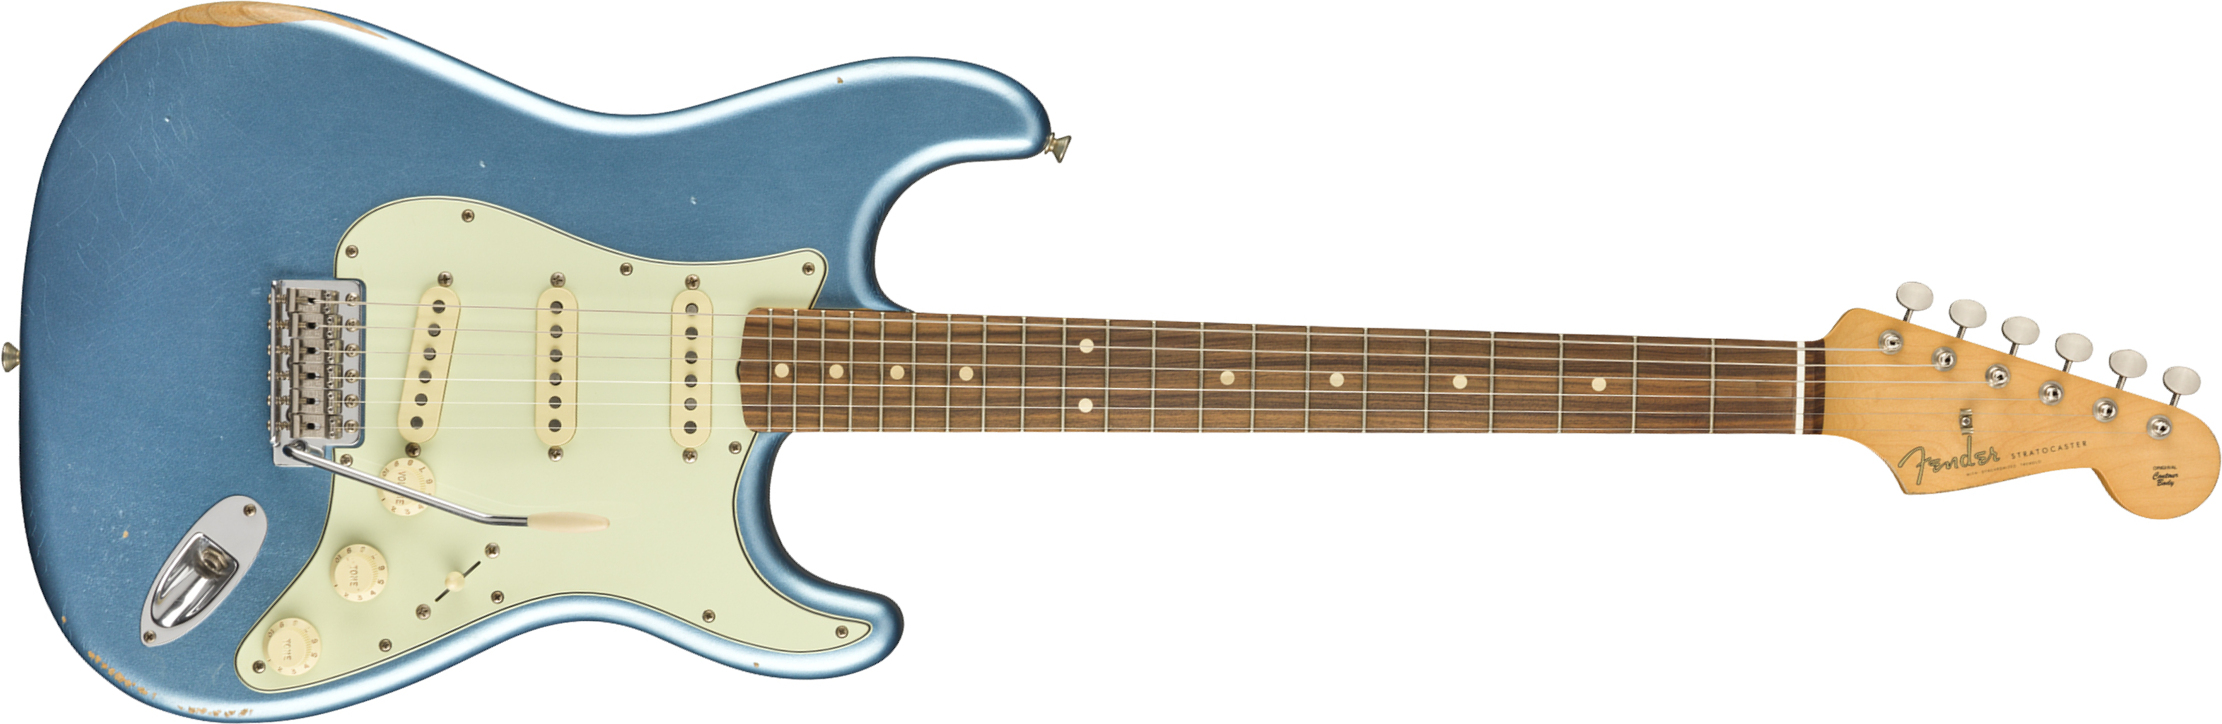 Fender Strat 60s Road Worn Mex Pf - Lake Placid Blue - Elektrische gitaar in Str-vorm - Main picture